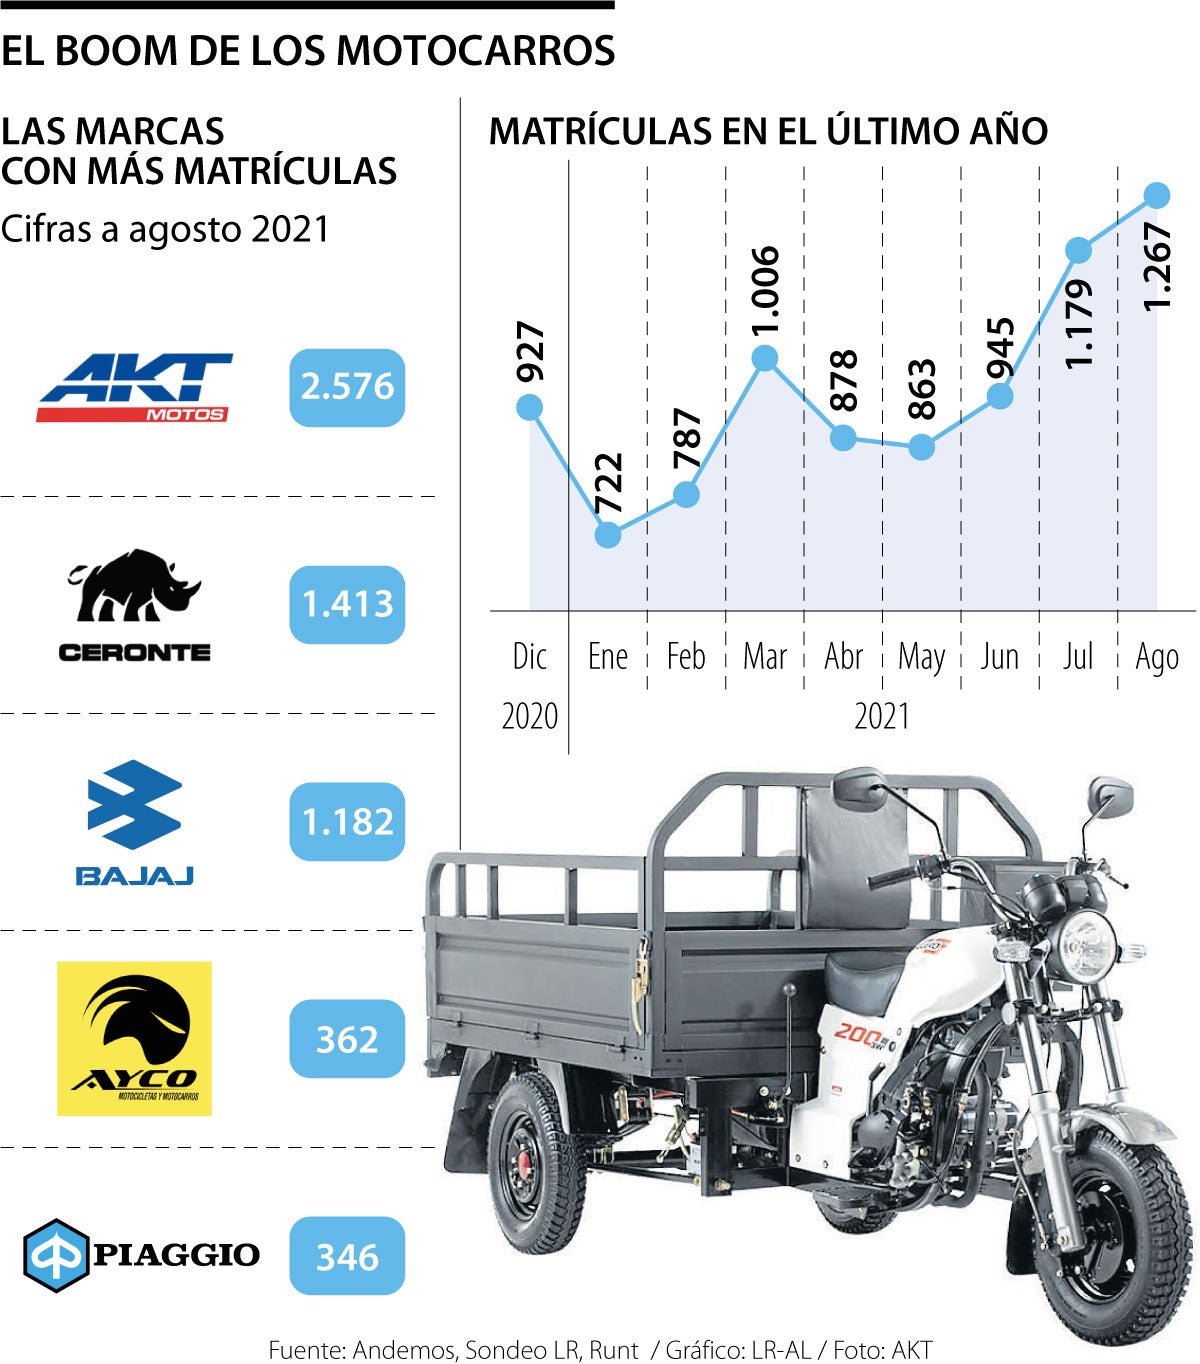 AKT, Ceronte, Bajaj, Ayco y Piaggio, las marcas que lideran el boom de los  motocarros